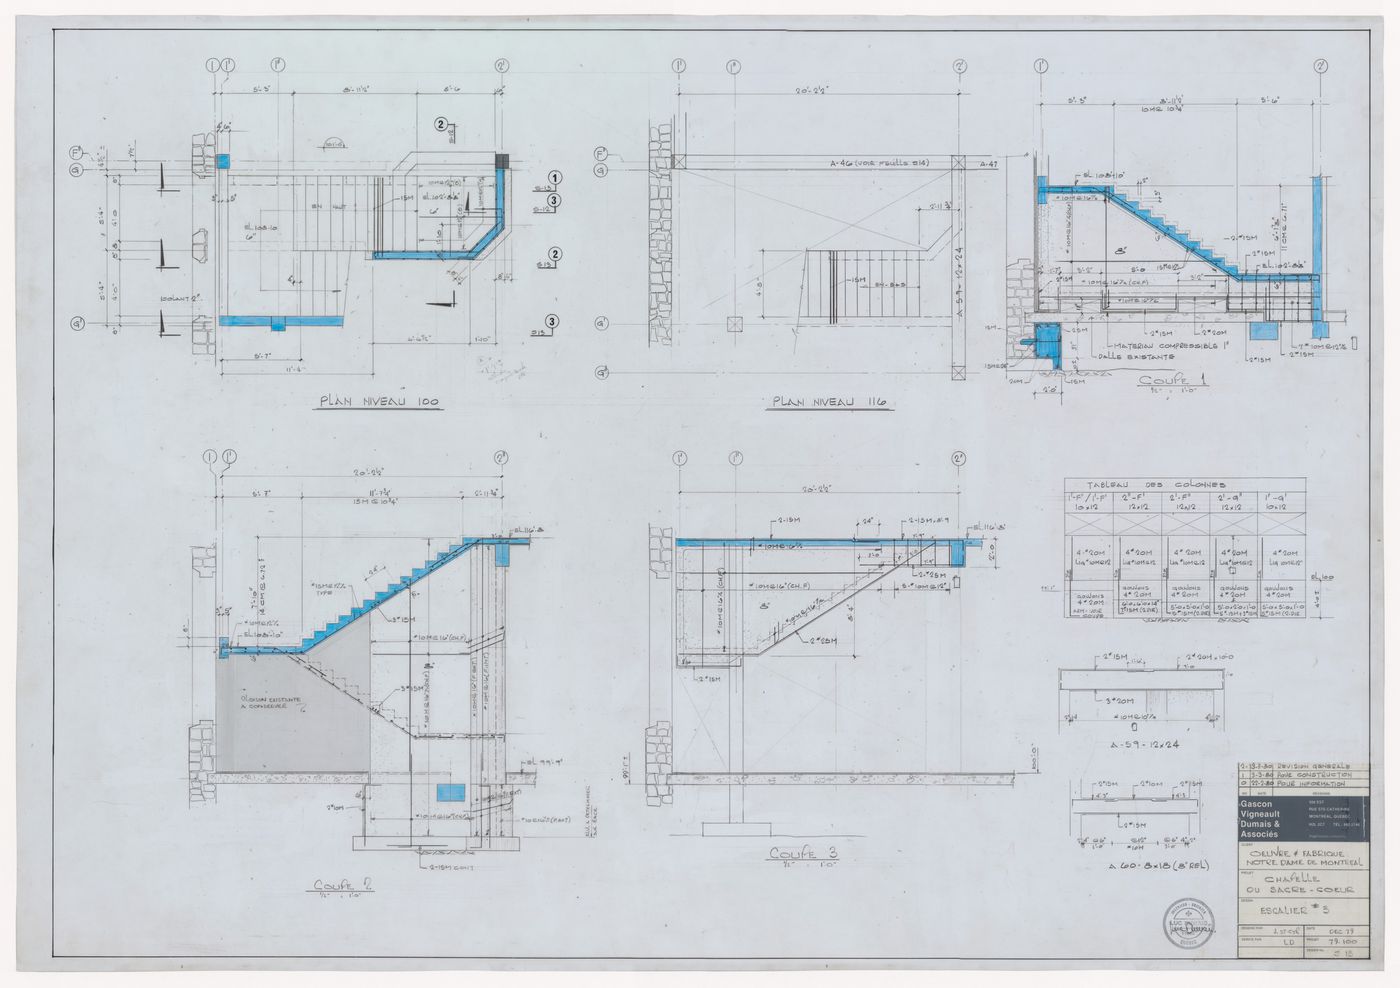 Plans and sections for stairs for the reconstruction of the Chapelle du Sacré-Coeur, Notre-Dame de Montréal